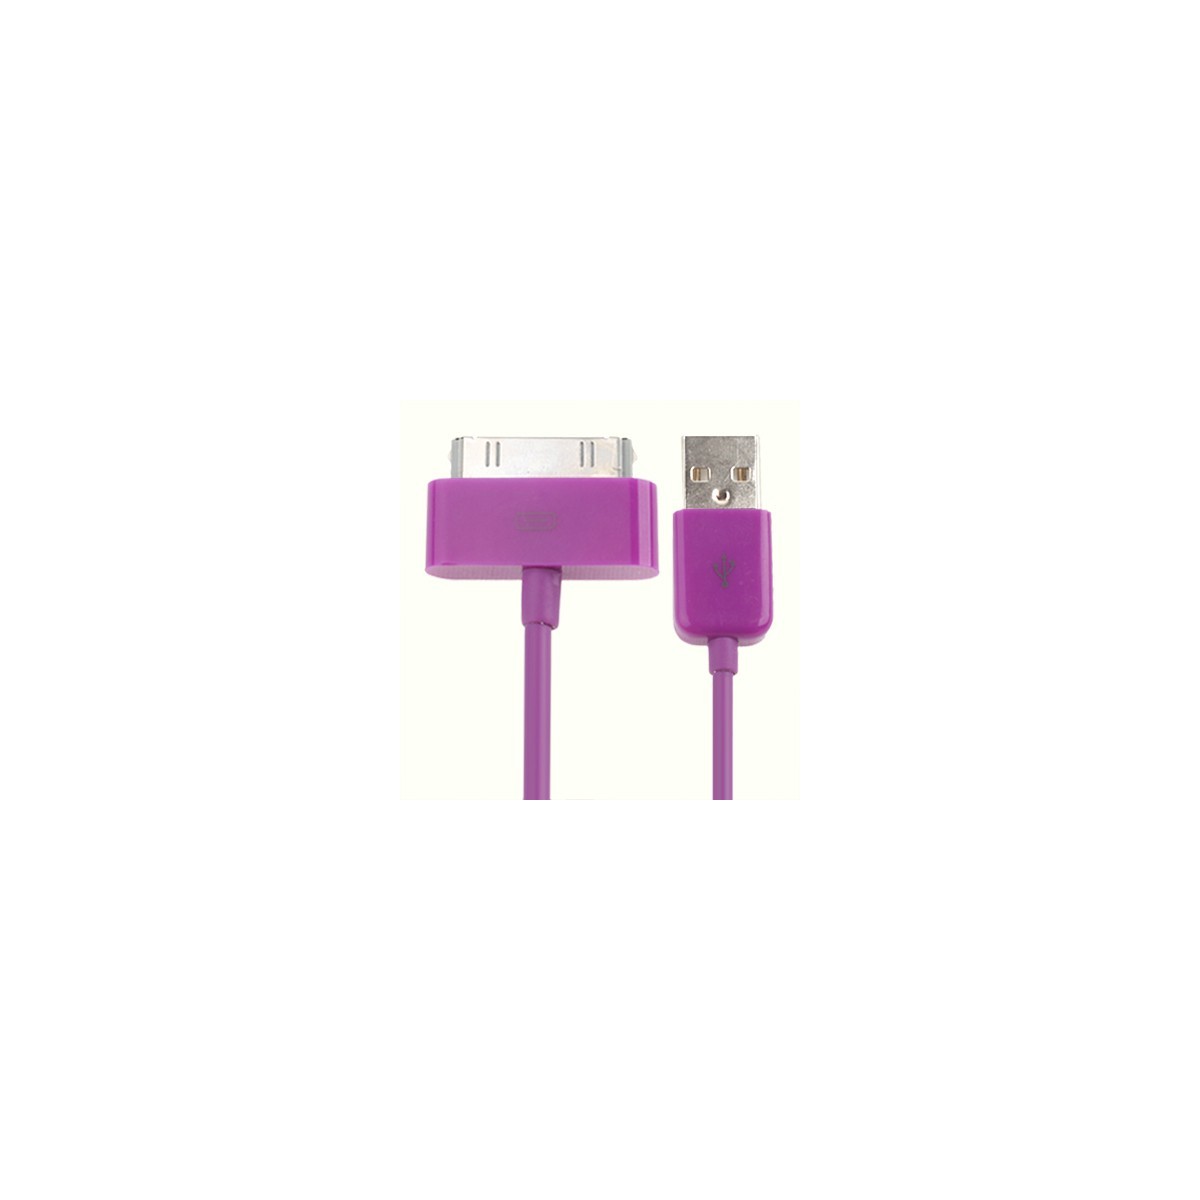 Câble de synchronisation USB pour iPhone 4 & 4S 1m Violet